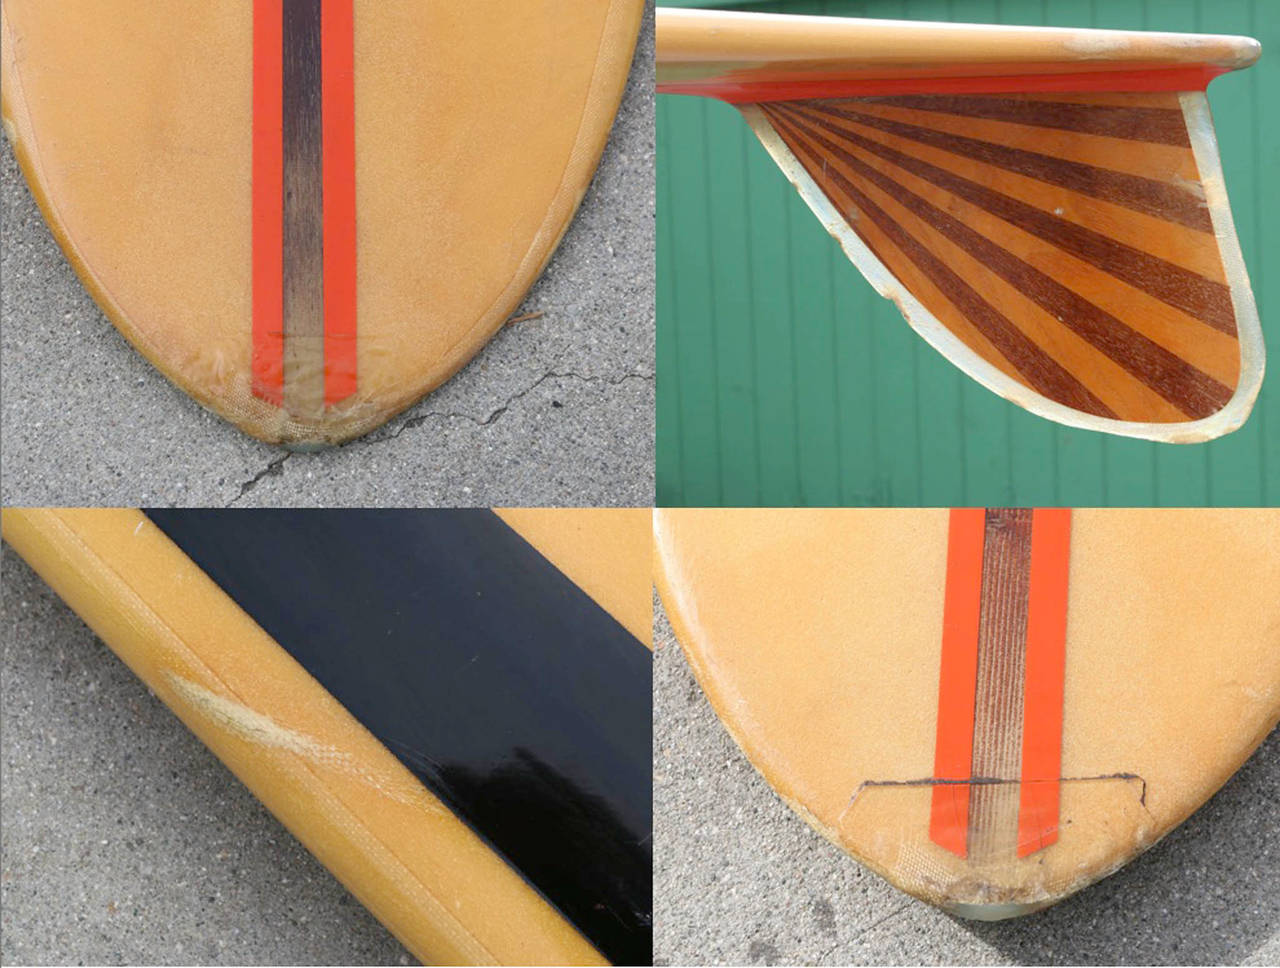 California Semi-Gun Surfboard Shaped by Dale Velzy for Jeffrey Dale 1962 1